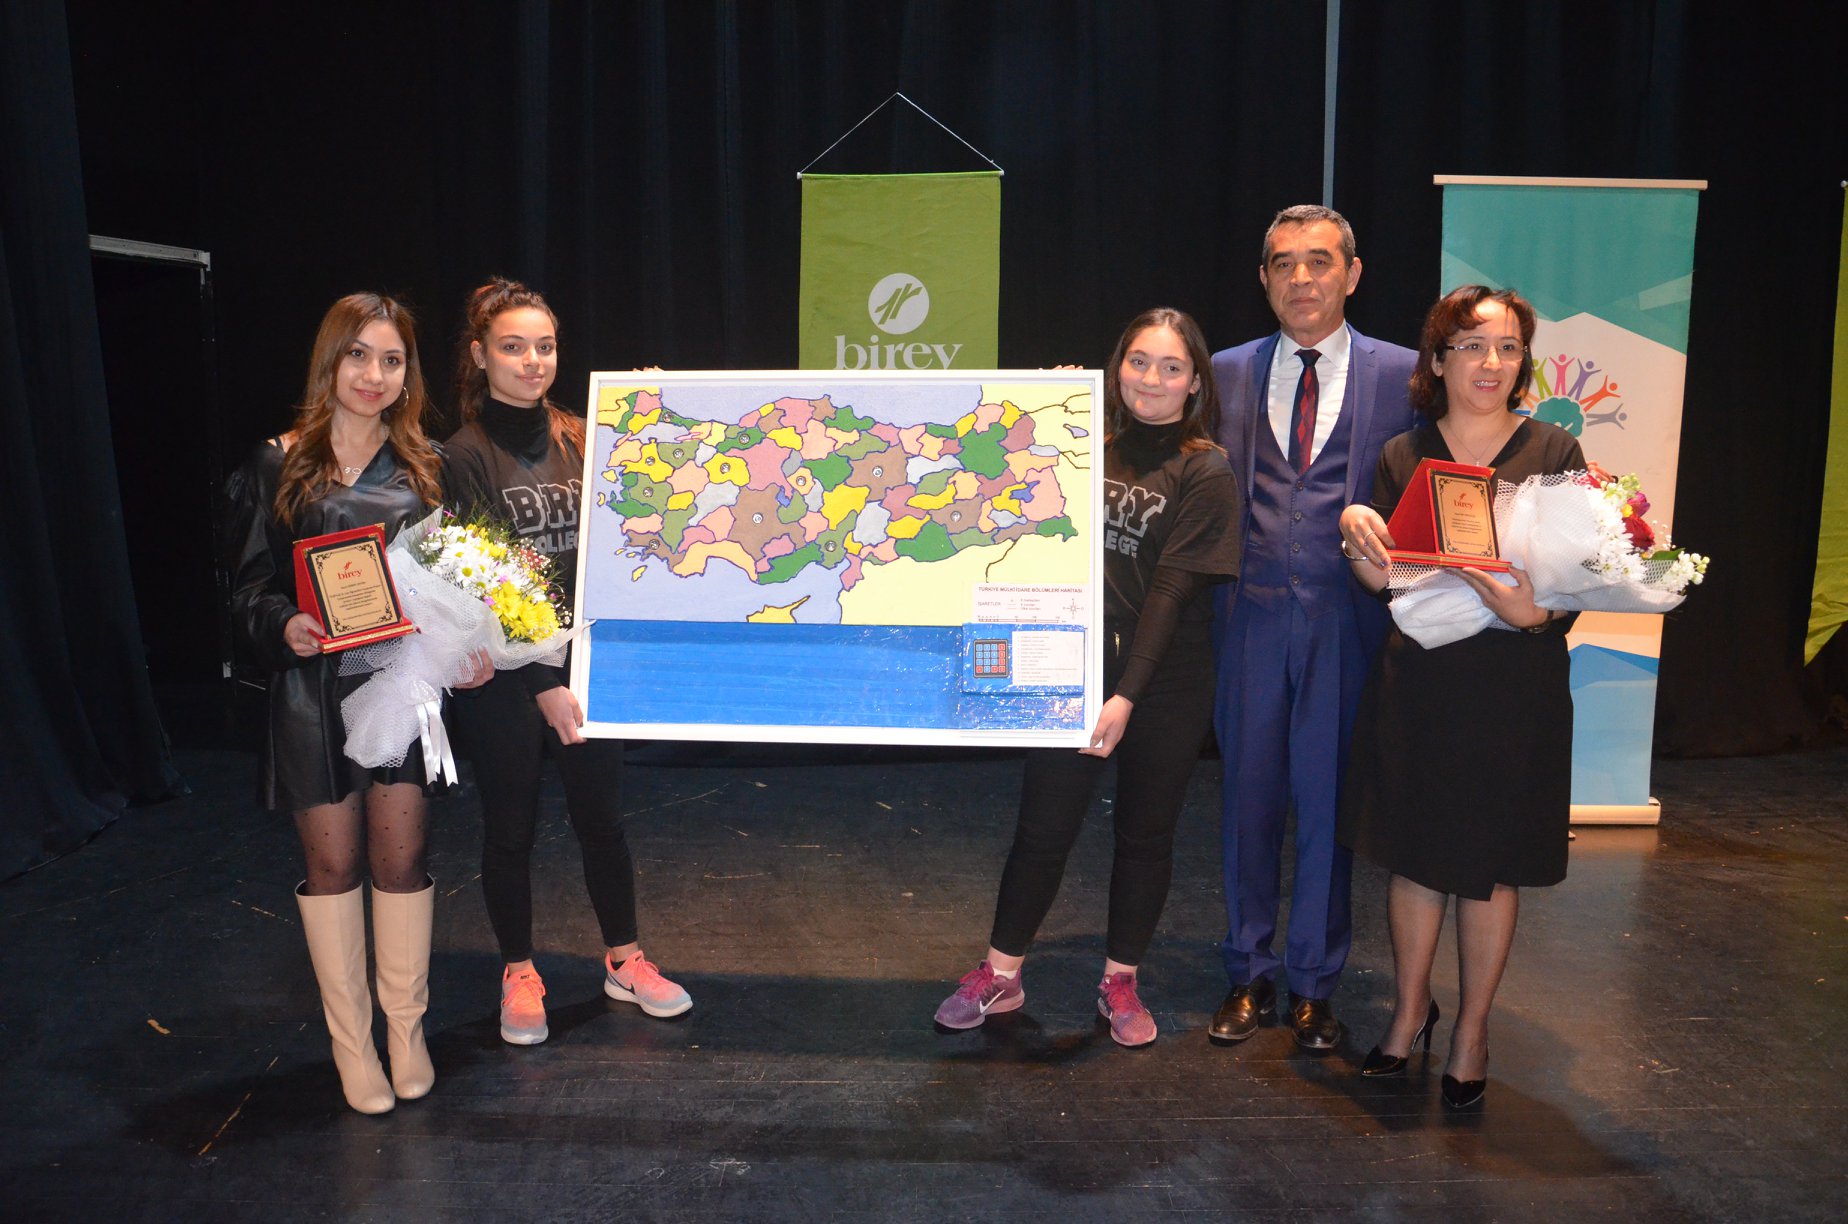 Birey | Blog | Eskişehir Birey Kolej'den 1Haritamla Oynuyorum, Şairimi Tanıyorum" projesi  Bölge Finalinde 